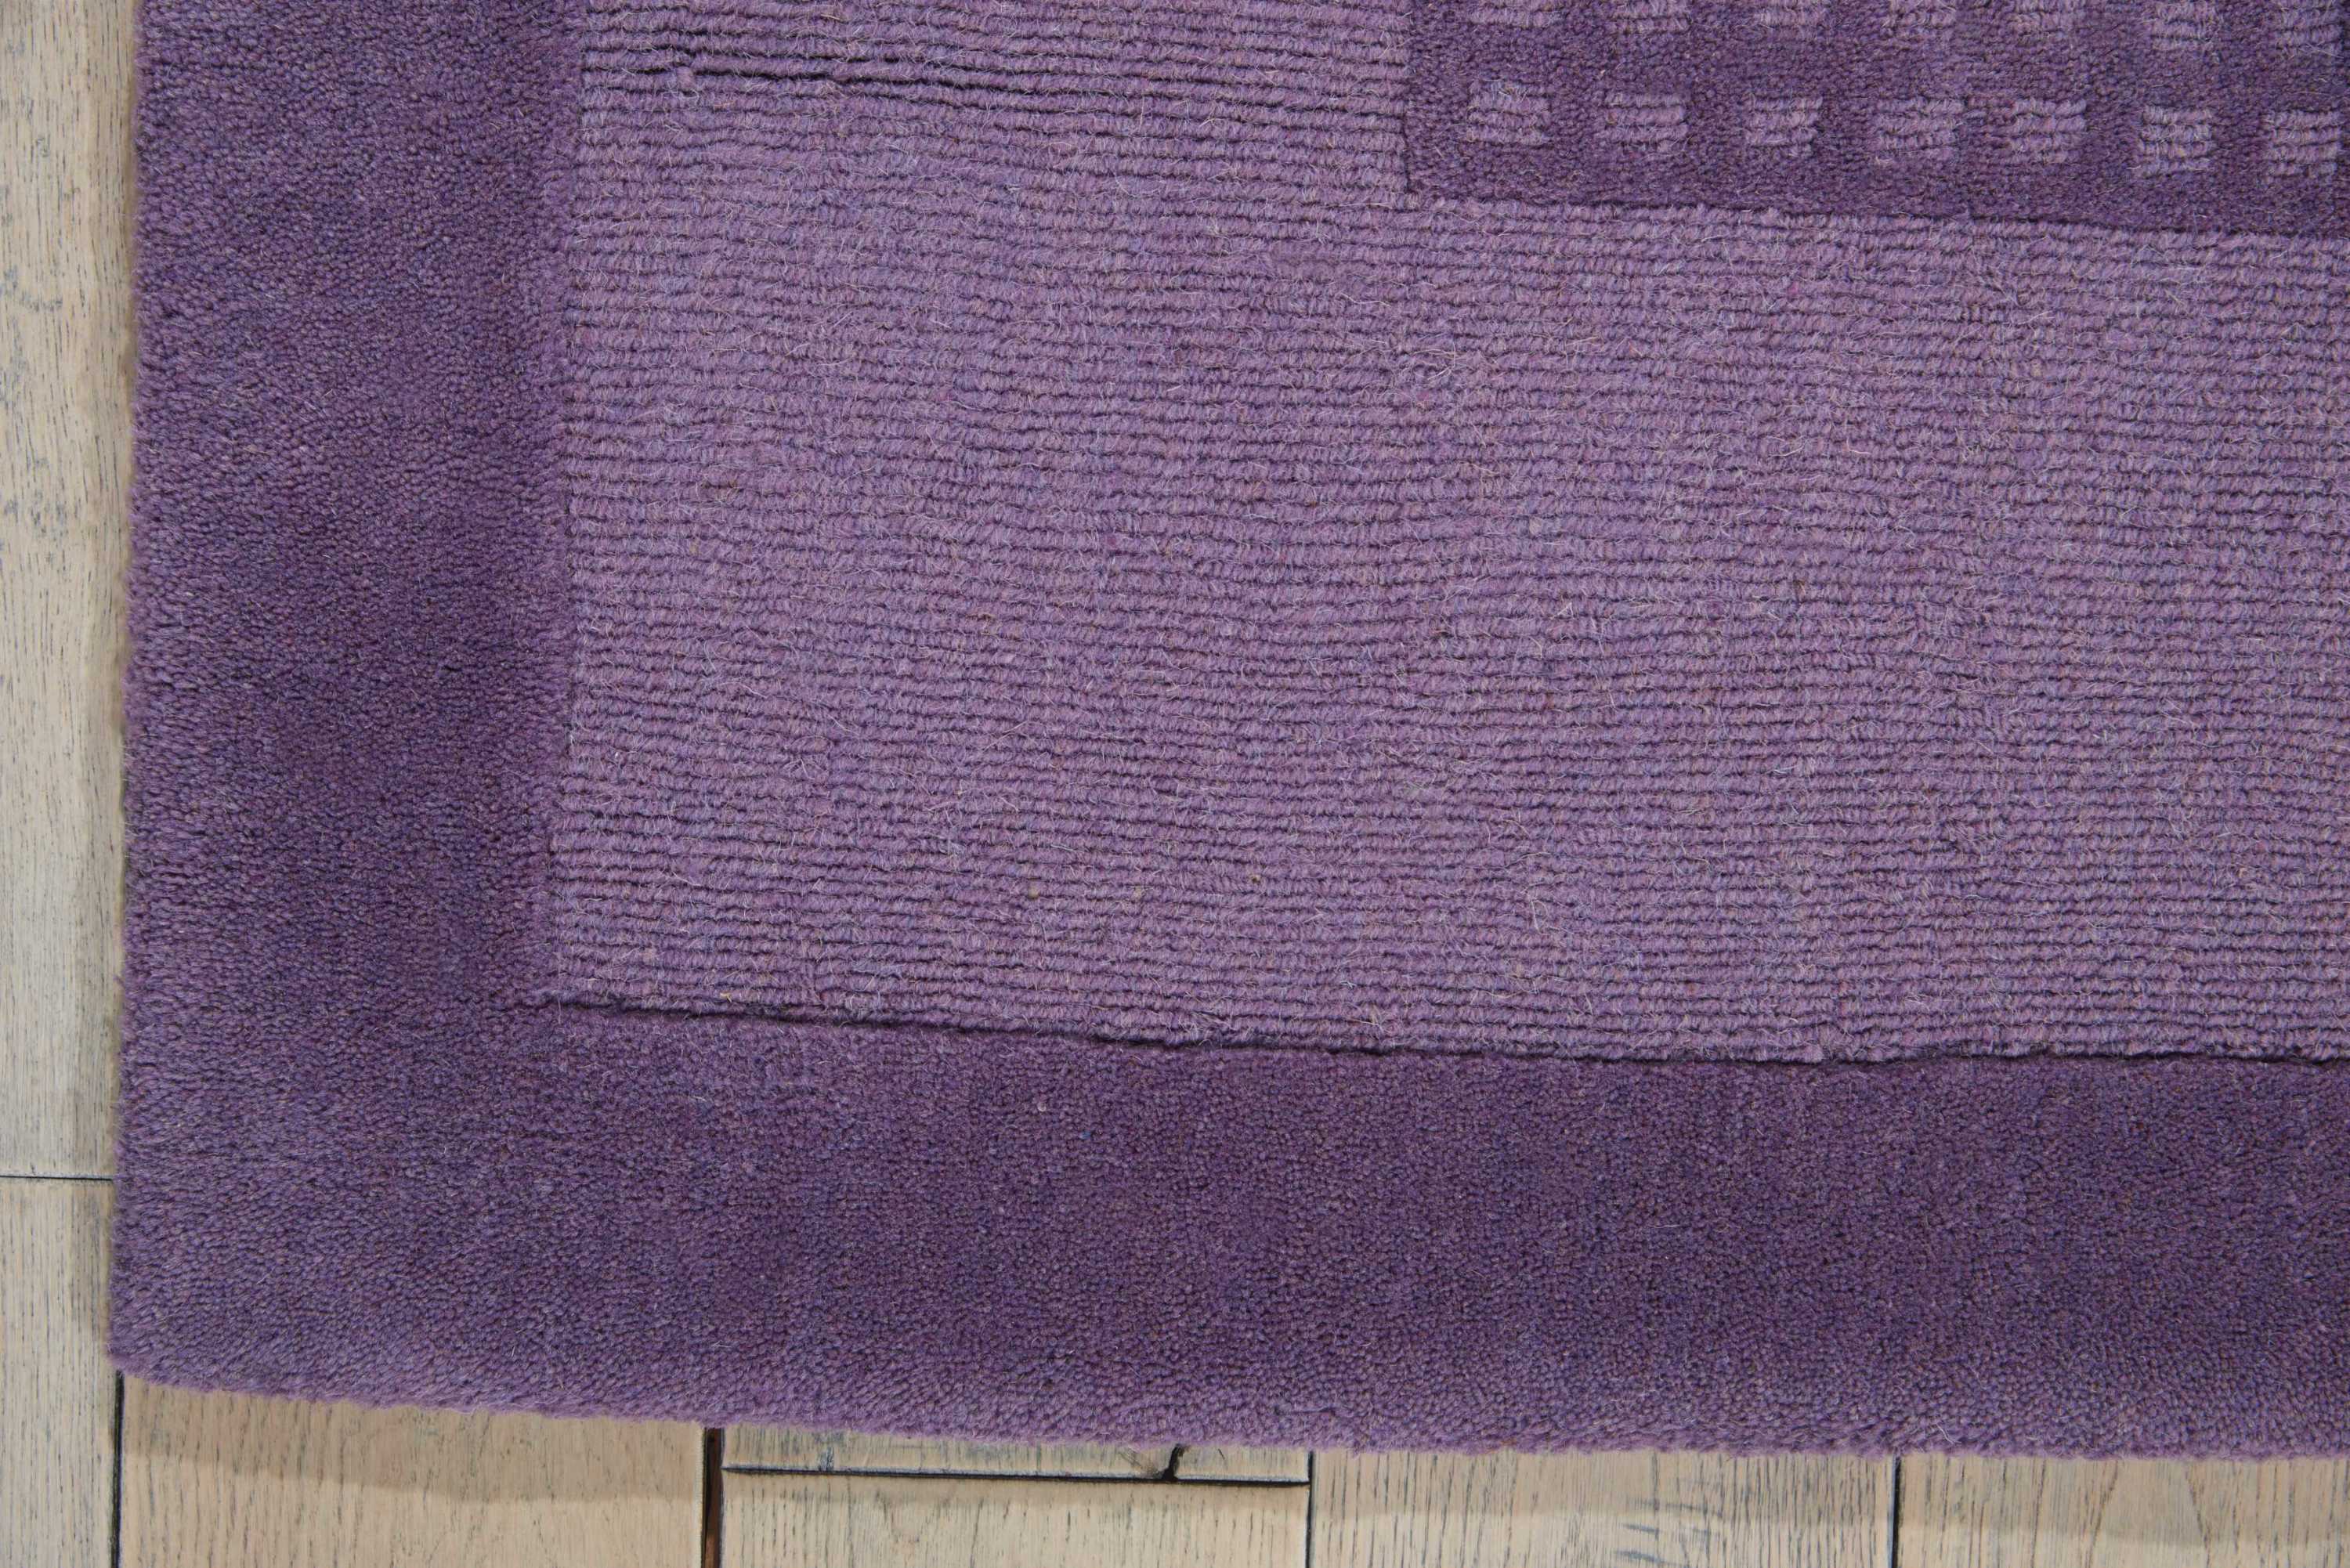 Nourison Westport Solid Purple 3'6" x 5'6" Area Rug, (4x6) - image 4 of 5